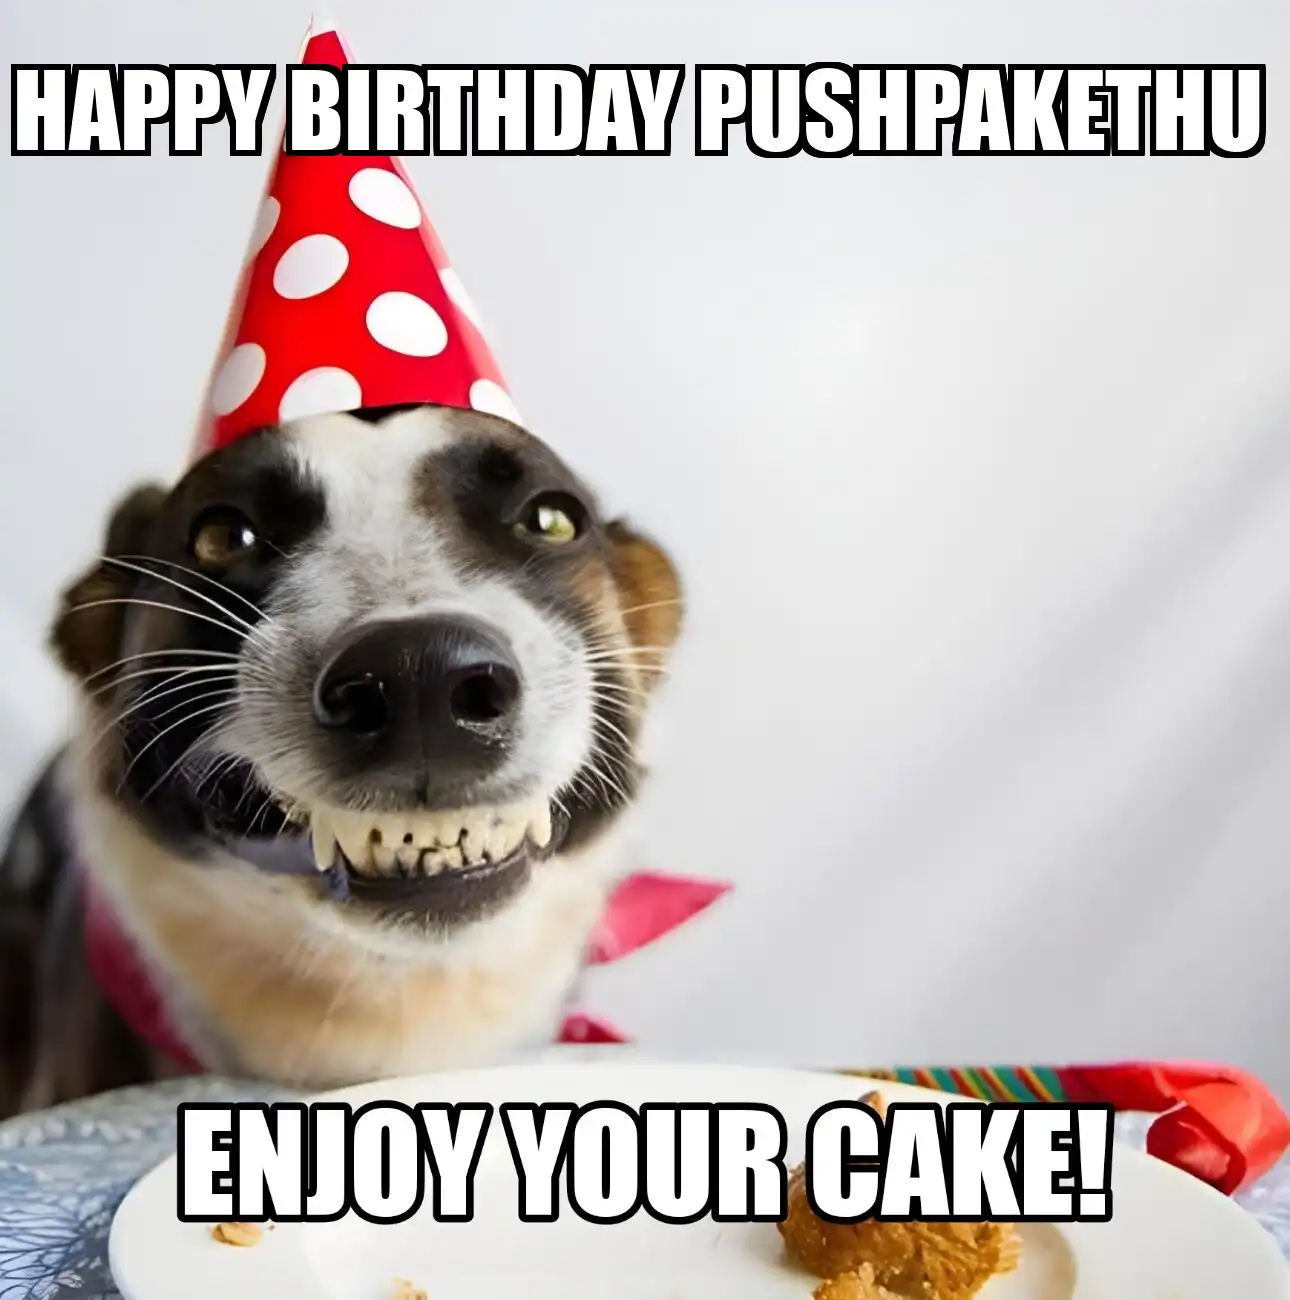 Happy Birthday Pushpakethu Enjoy Your Cake Dog Meme